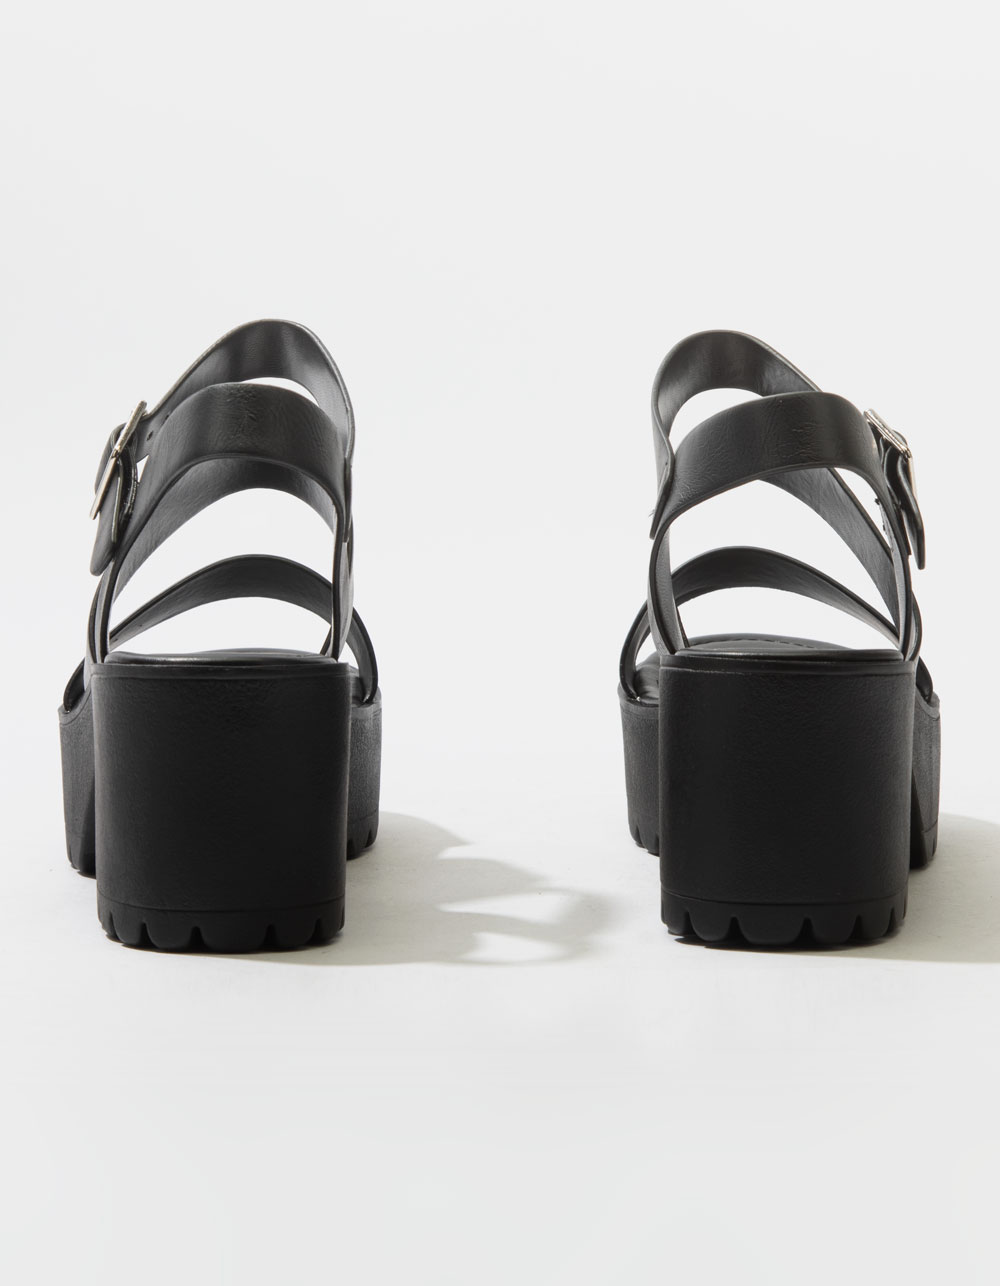 Soda Lug Sole Ankle Strap Platform Sandals - Black - 8